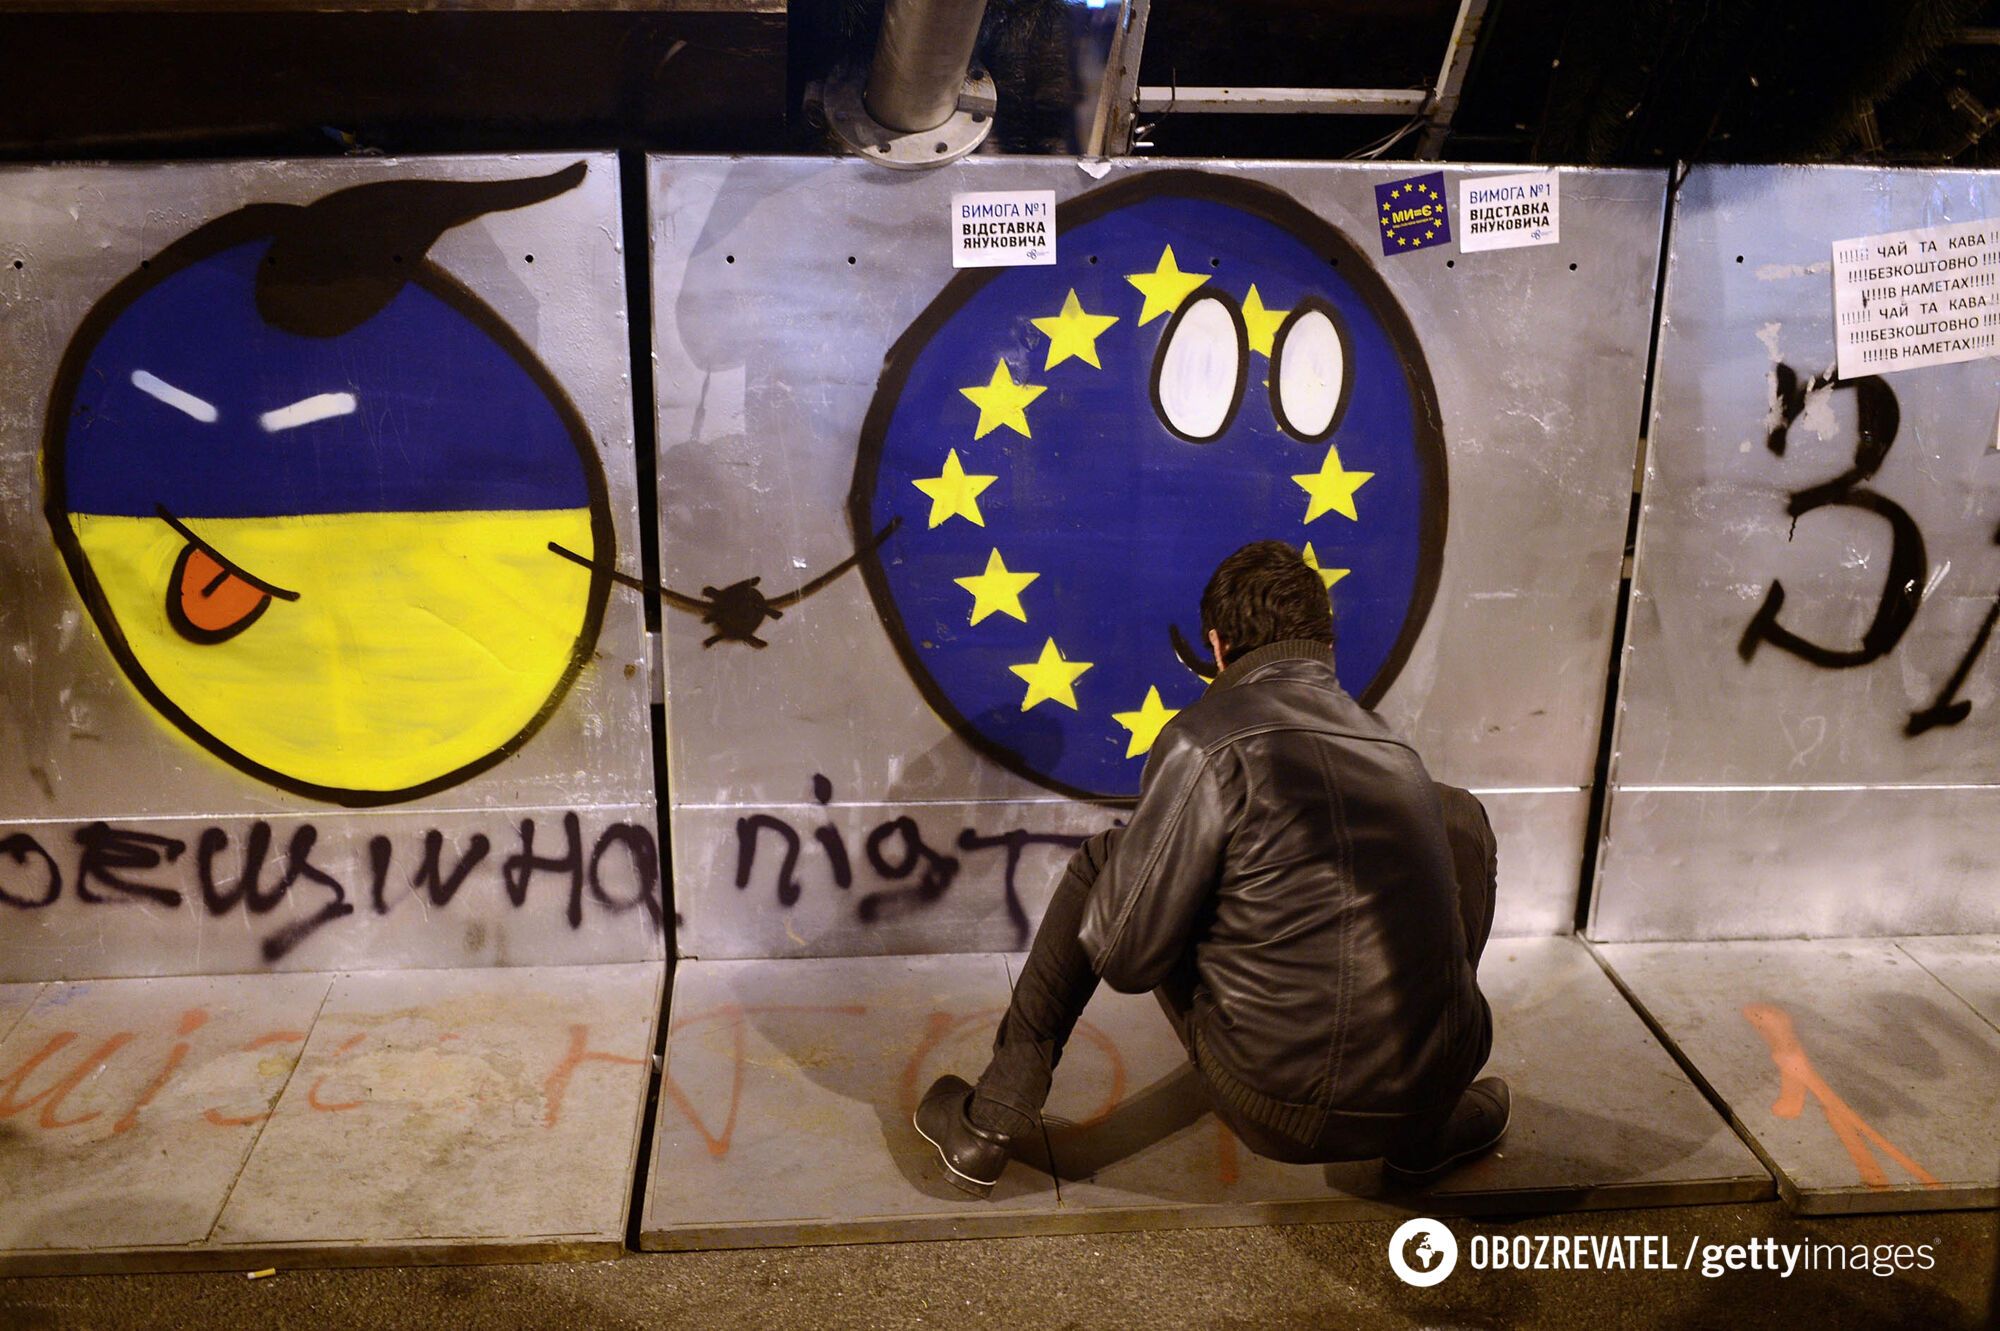 Чотири роки по тому: як на Майдані створили нову Україну